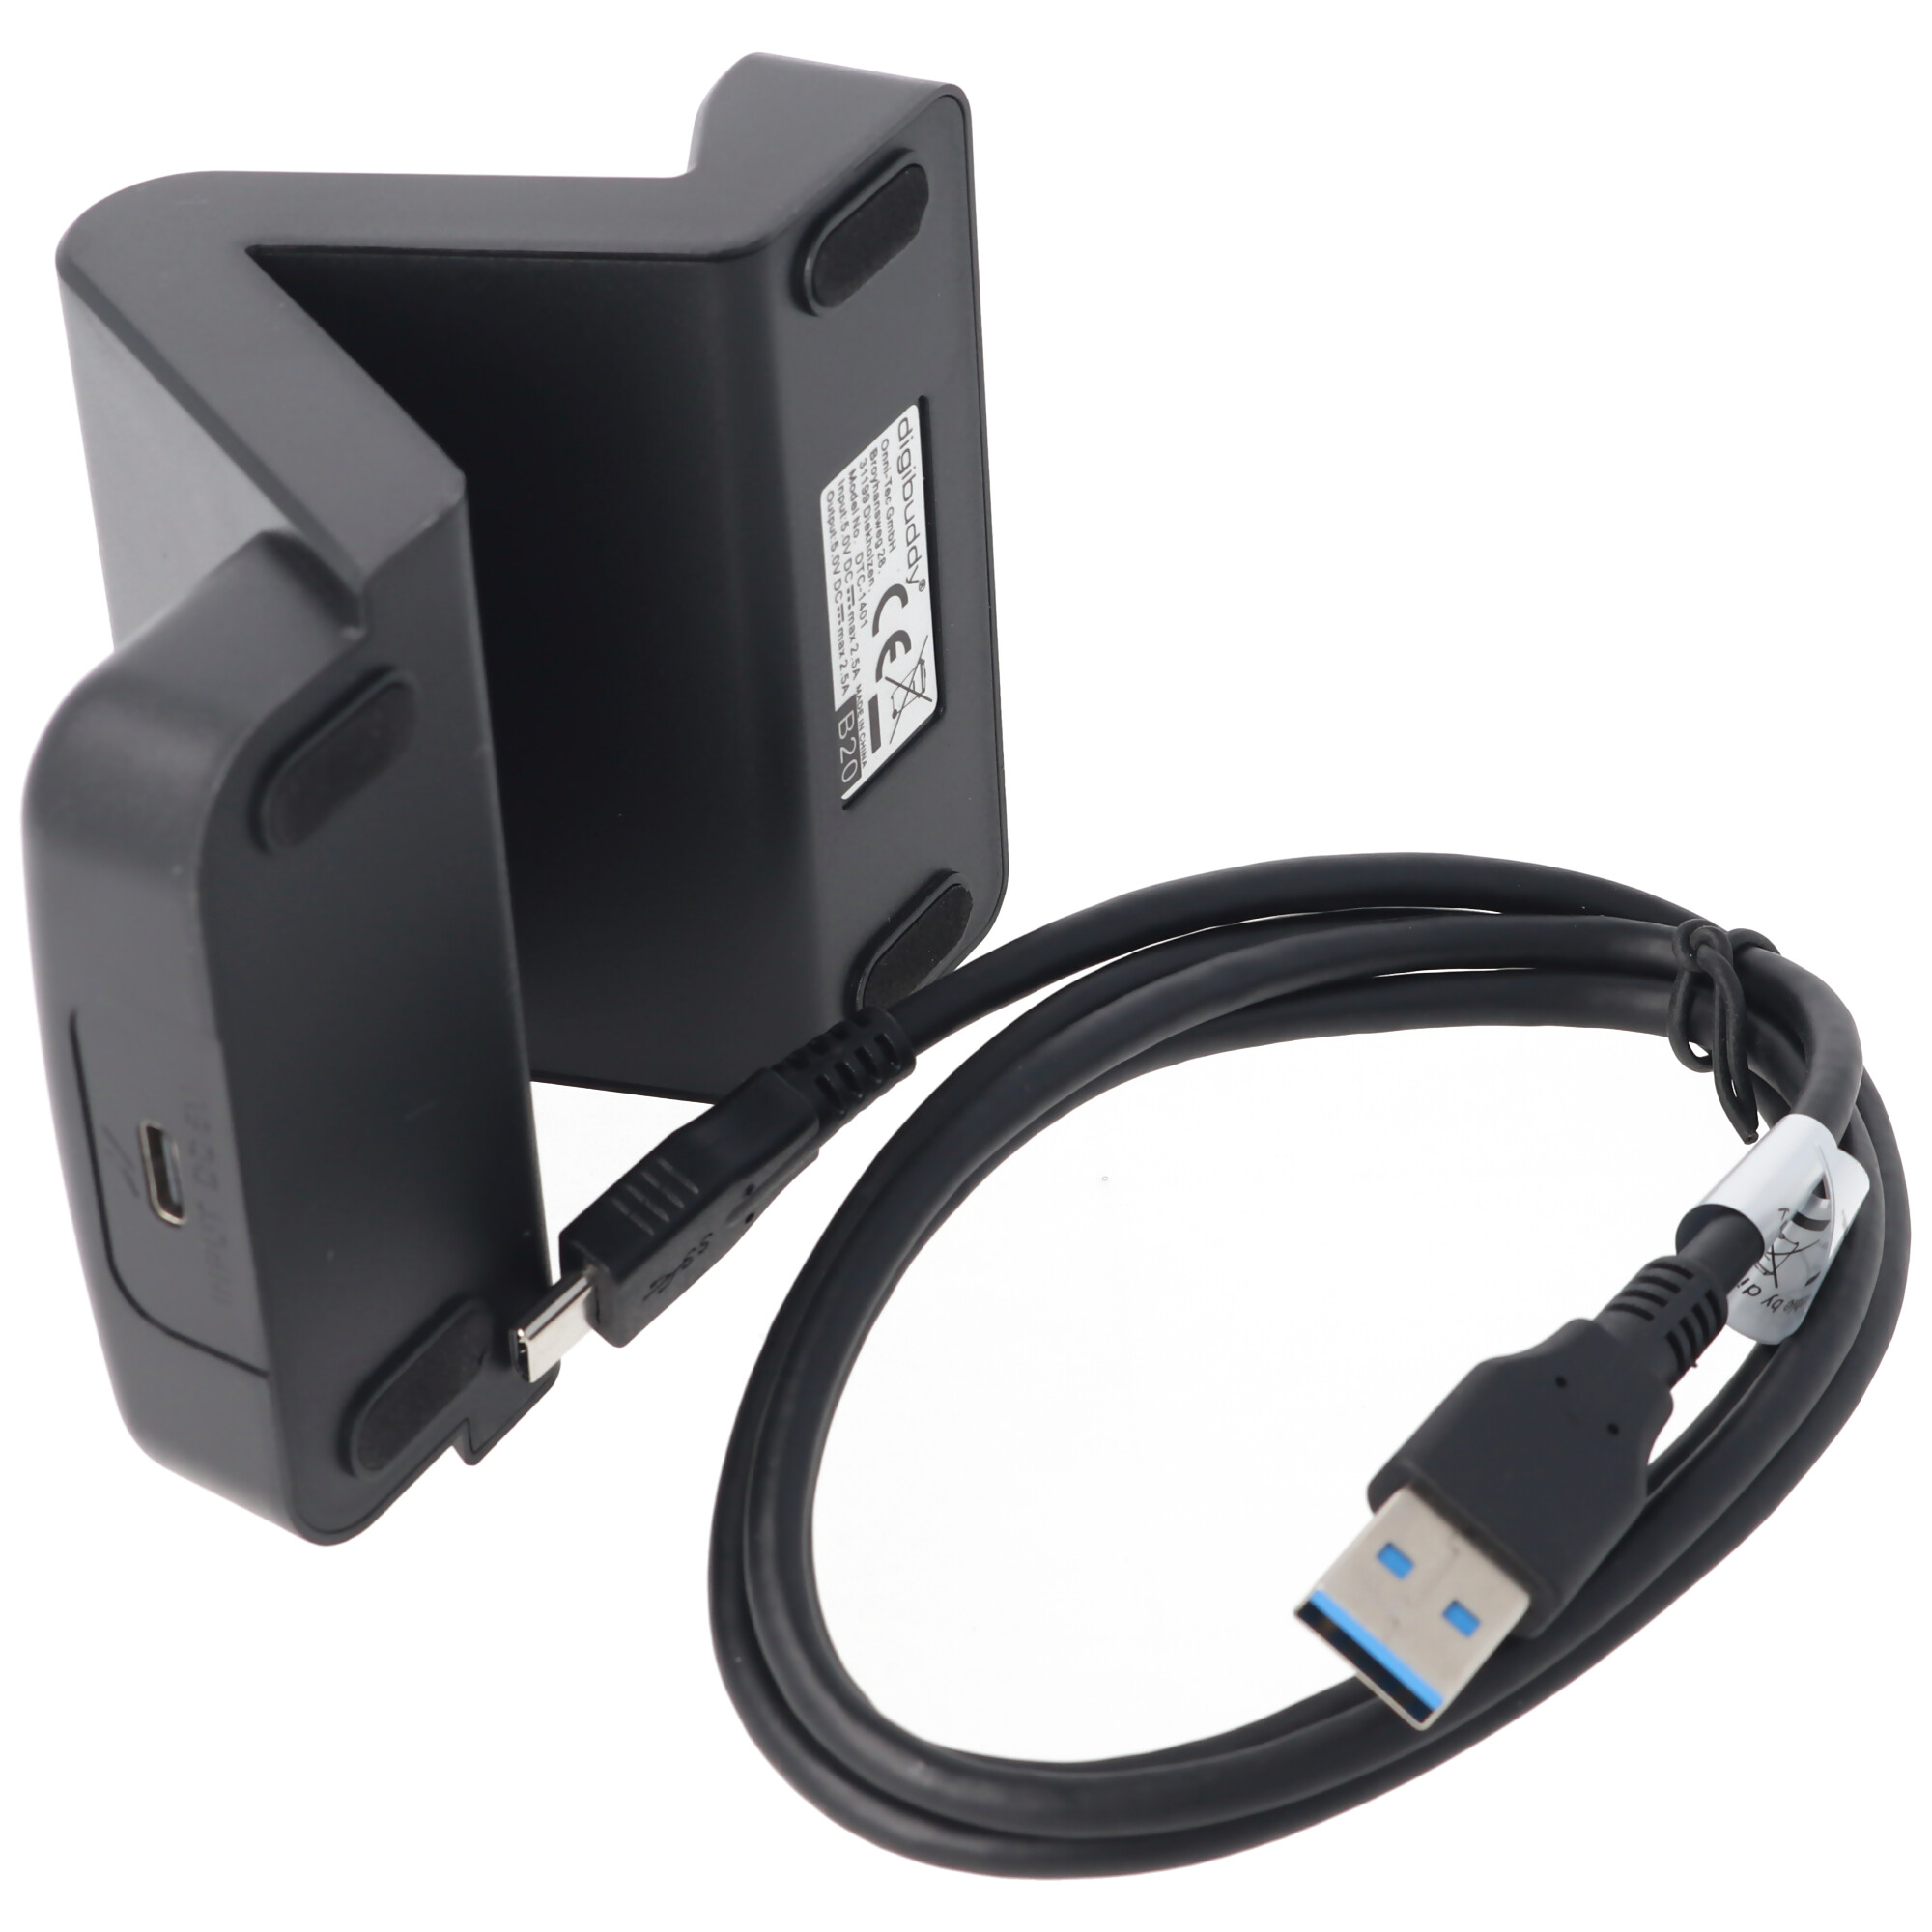 USB Dockingstation mit USB-C 3.1 (Type C) variabler Connector inklusive USB 3.0 Kabel zum Laden und Synchronisieren